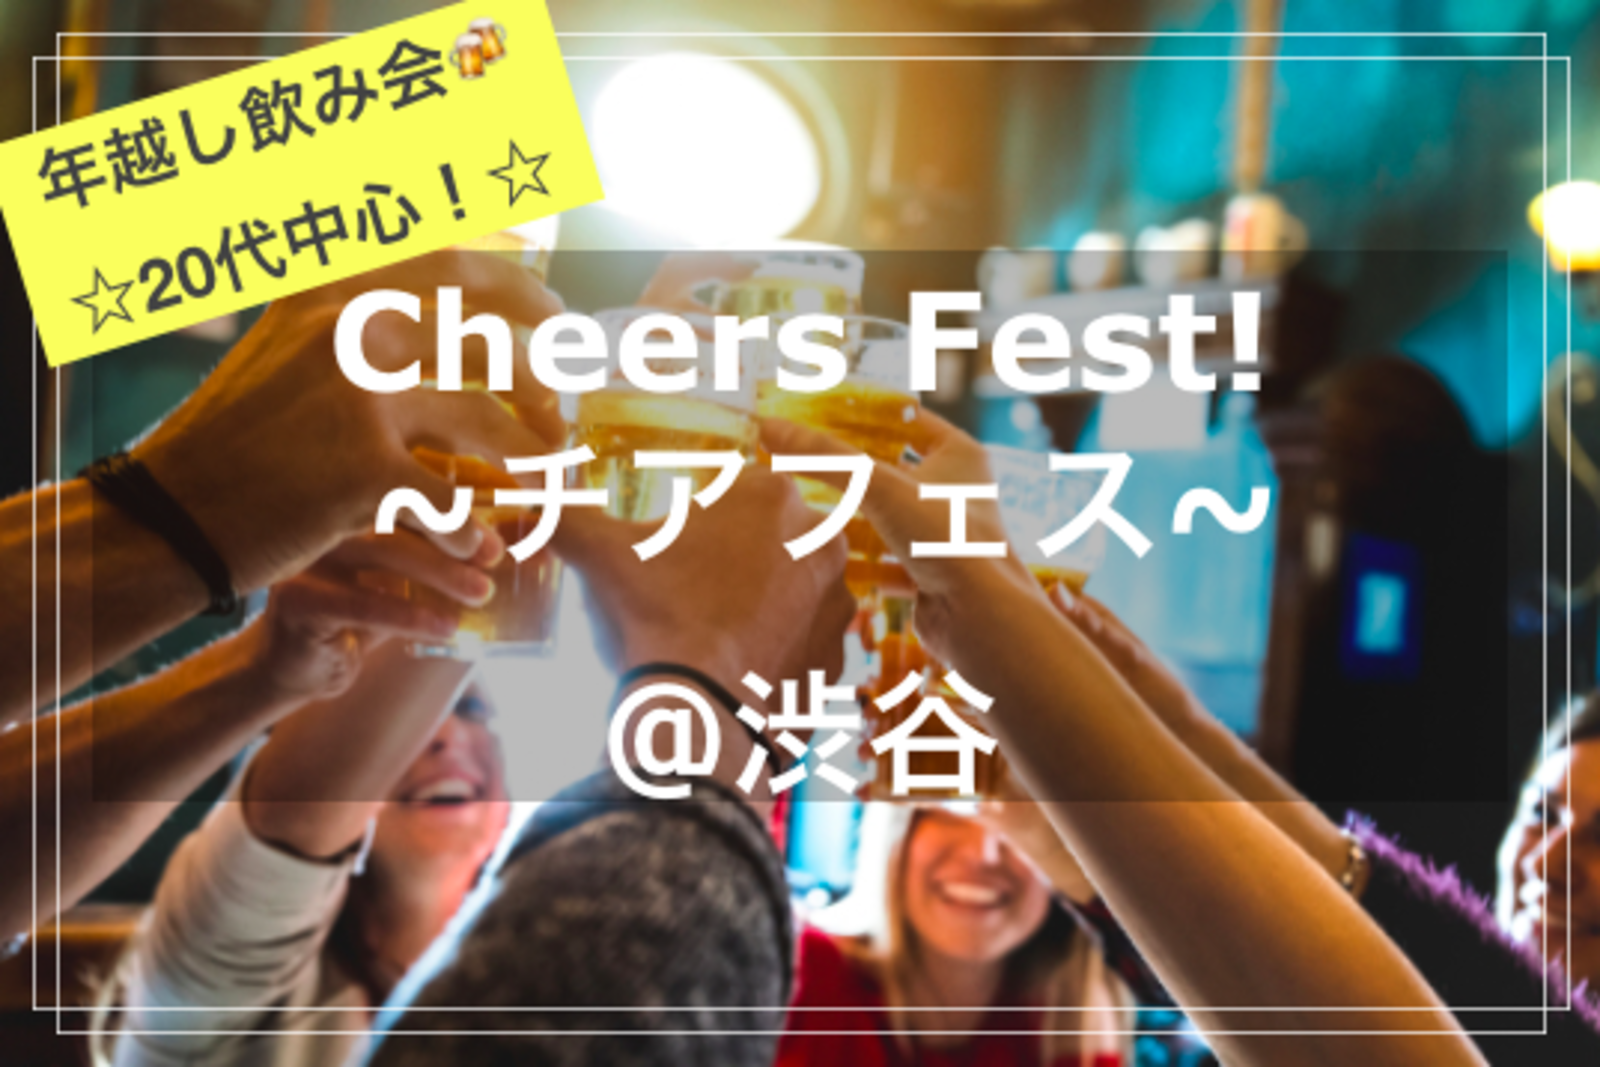 【20代中心✨】Cheers Fest!🍻🎉~チアフェス！~@とりいちず 渋谷マークシティ横店